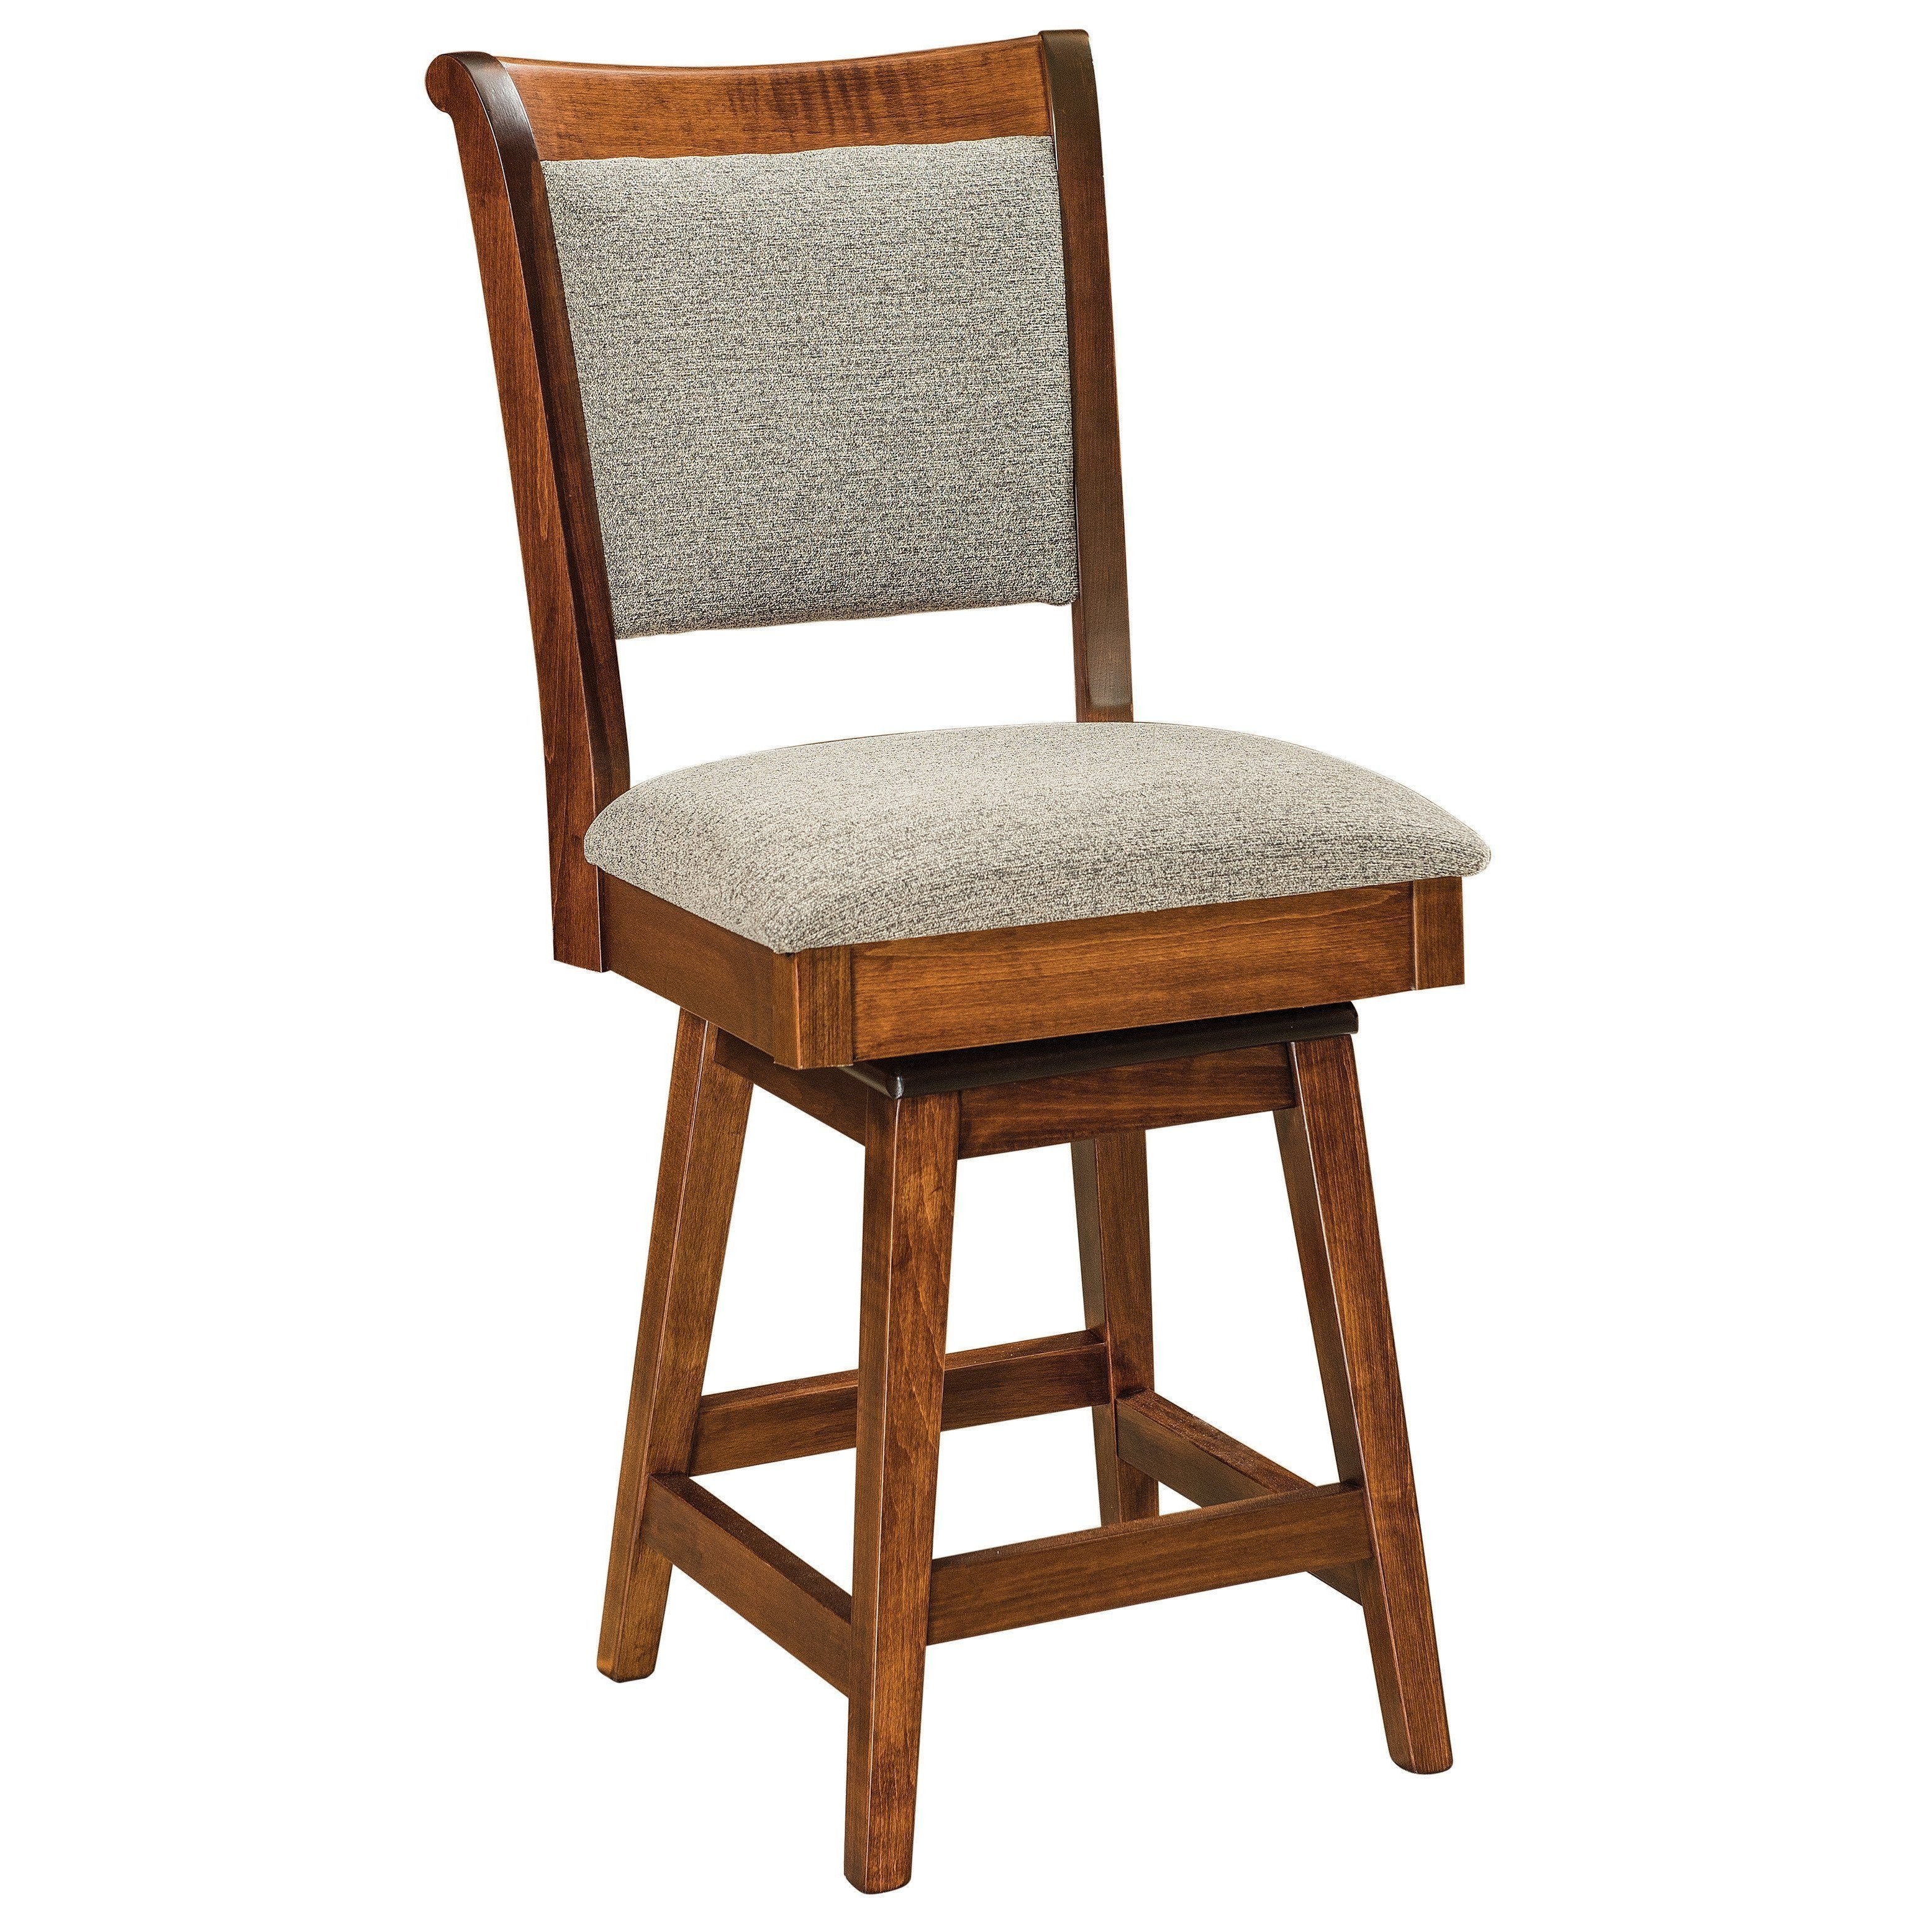 kimberly-swivel-bar-chair-260179.jpg